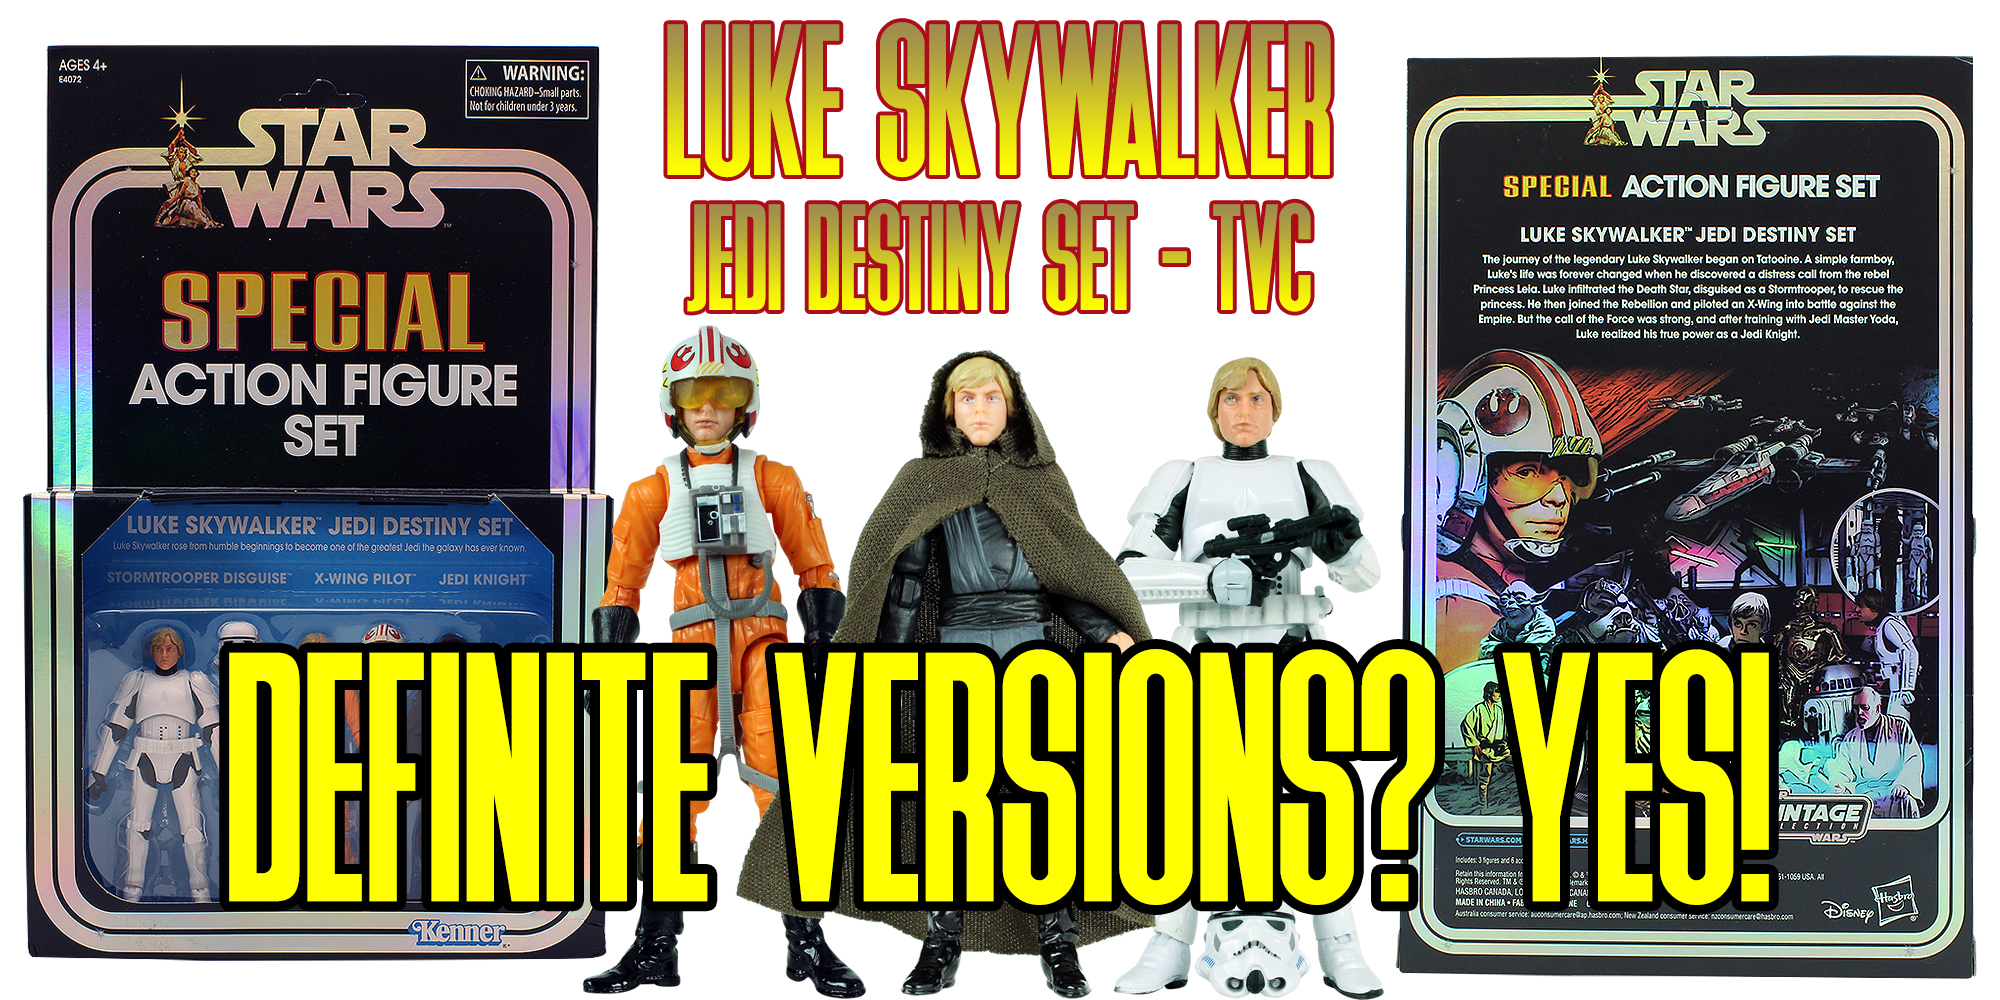 Check Out The Luke Skywalker Jedi Destiny Set!